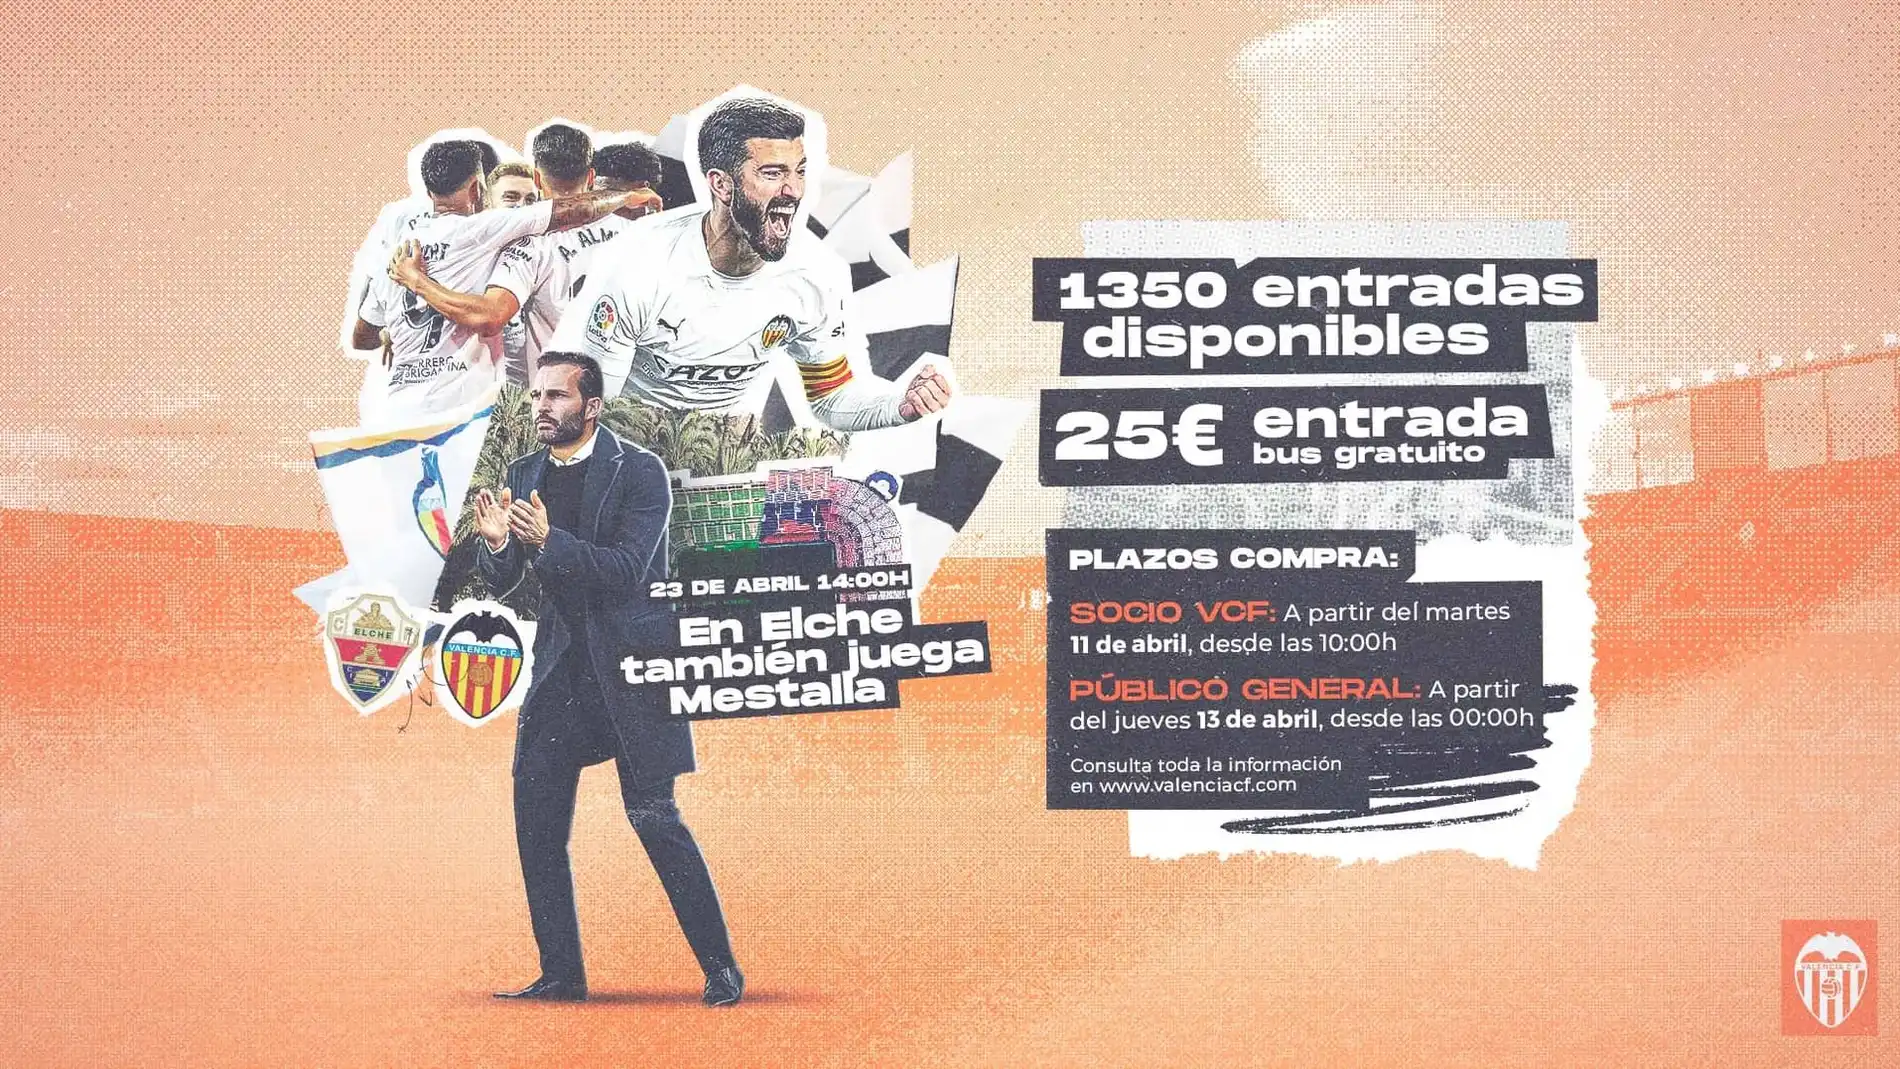 El Valencia pone a la venta 1.350 entradas para Elche